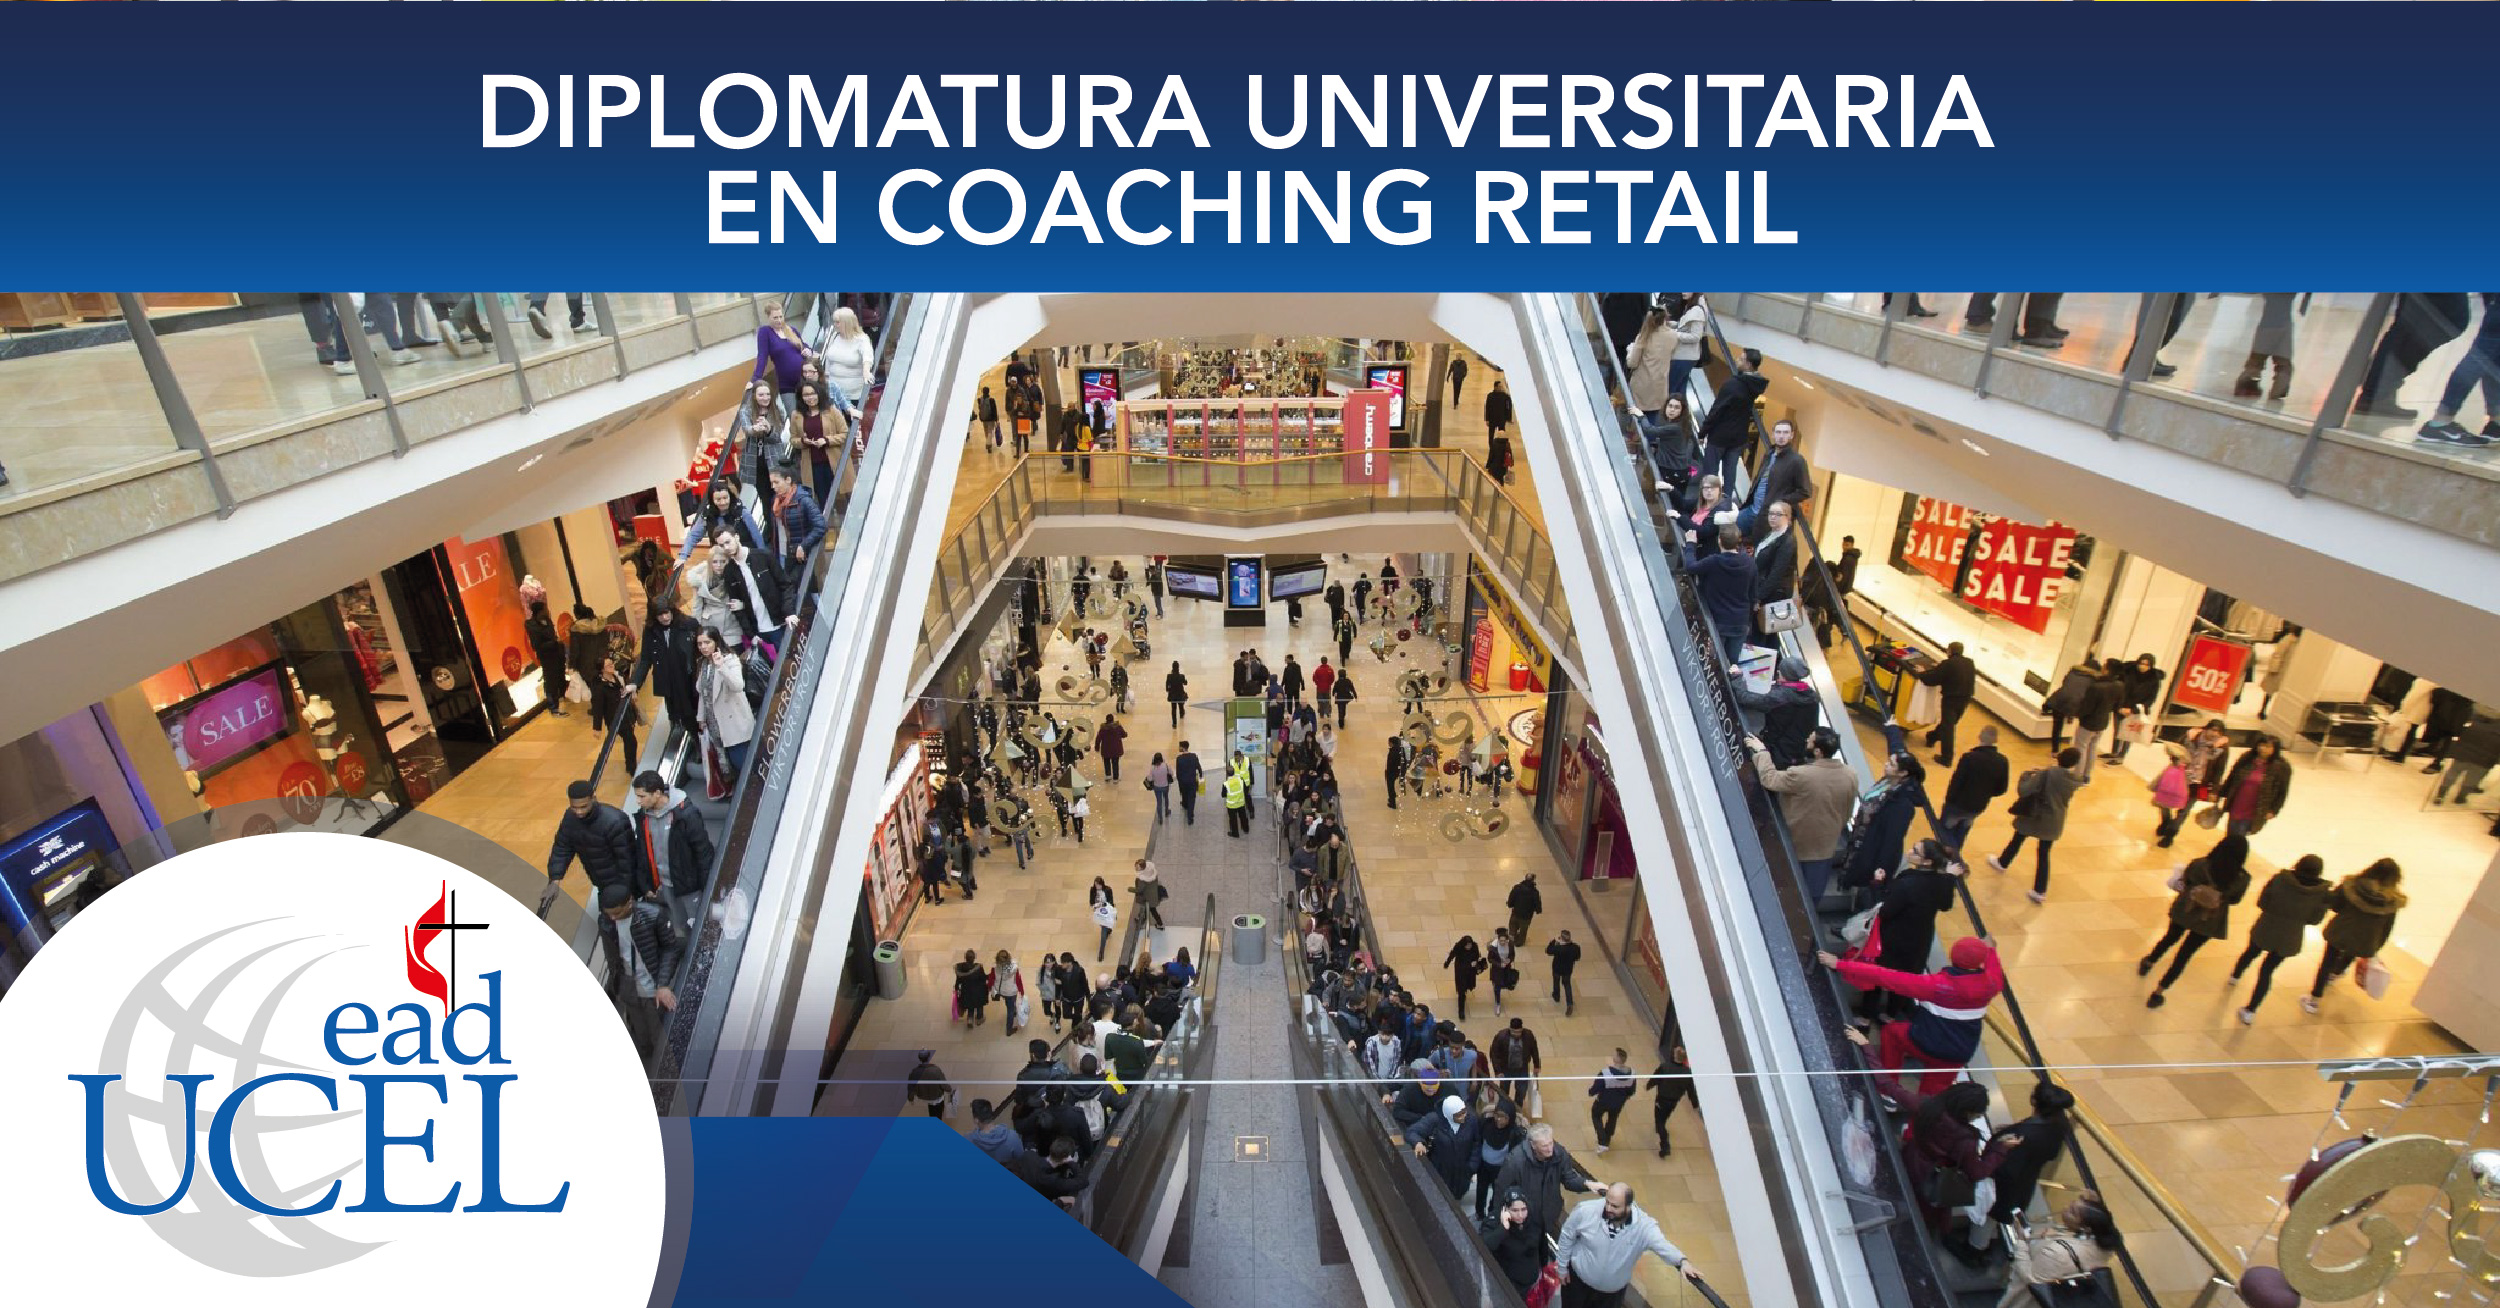 Diplomatura Universitaria en Coaching Retail 2019 02